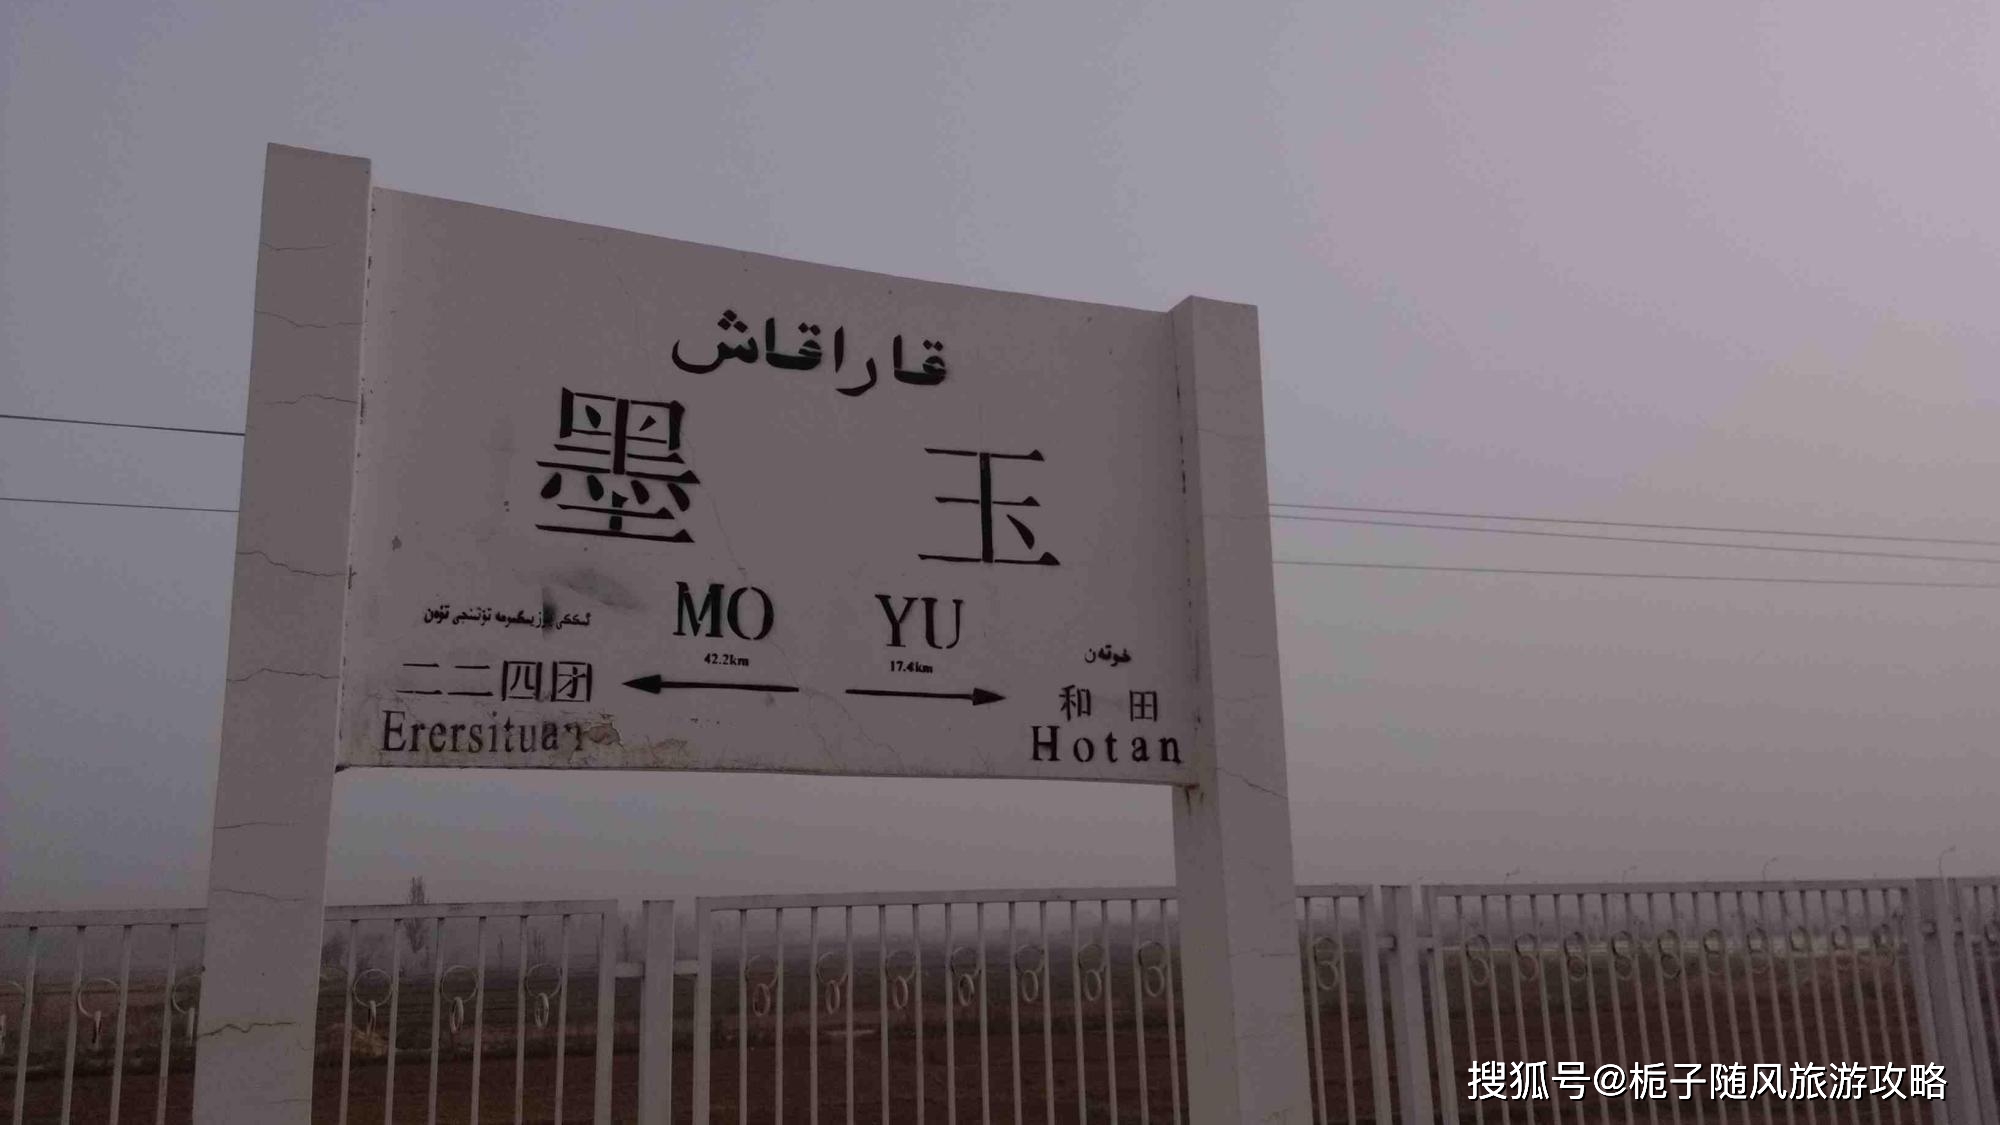 墨玉站位于新疆维吾尔自治区和田地区墨玉县,是喀和铁路(新疆喀什到